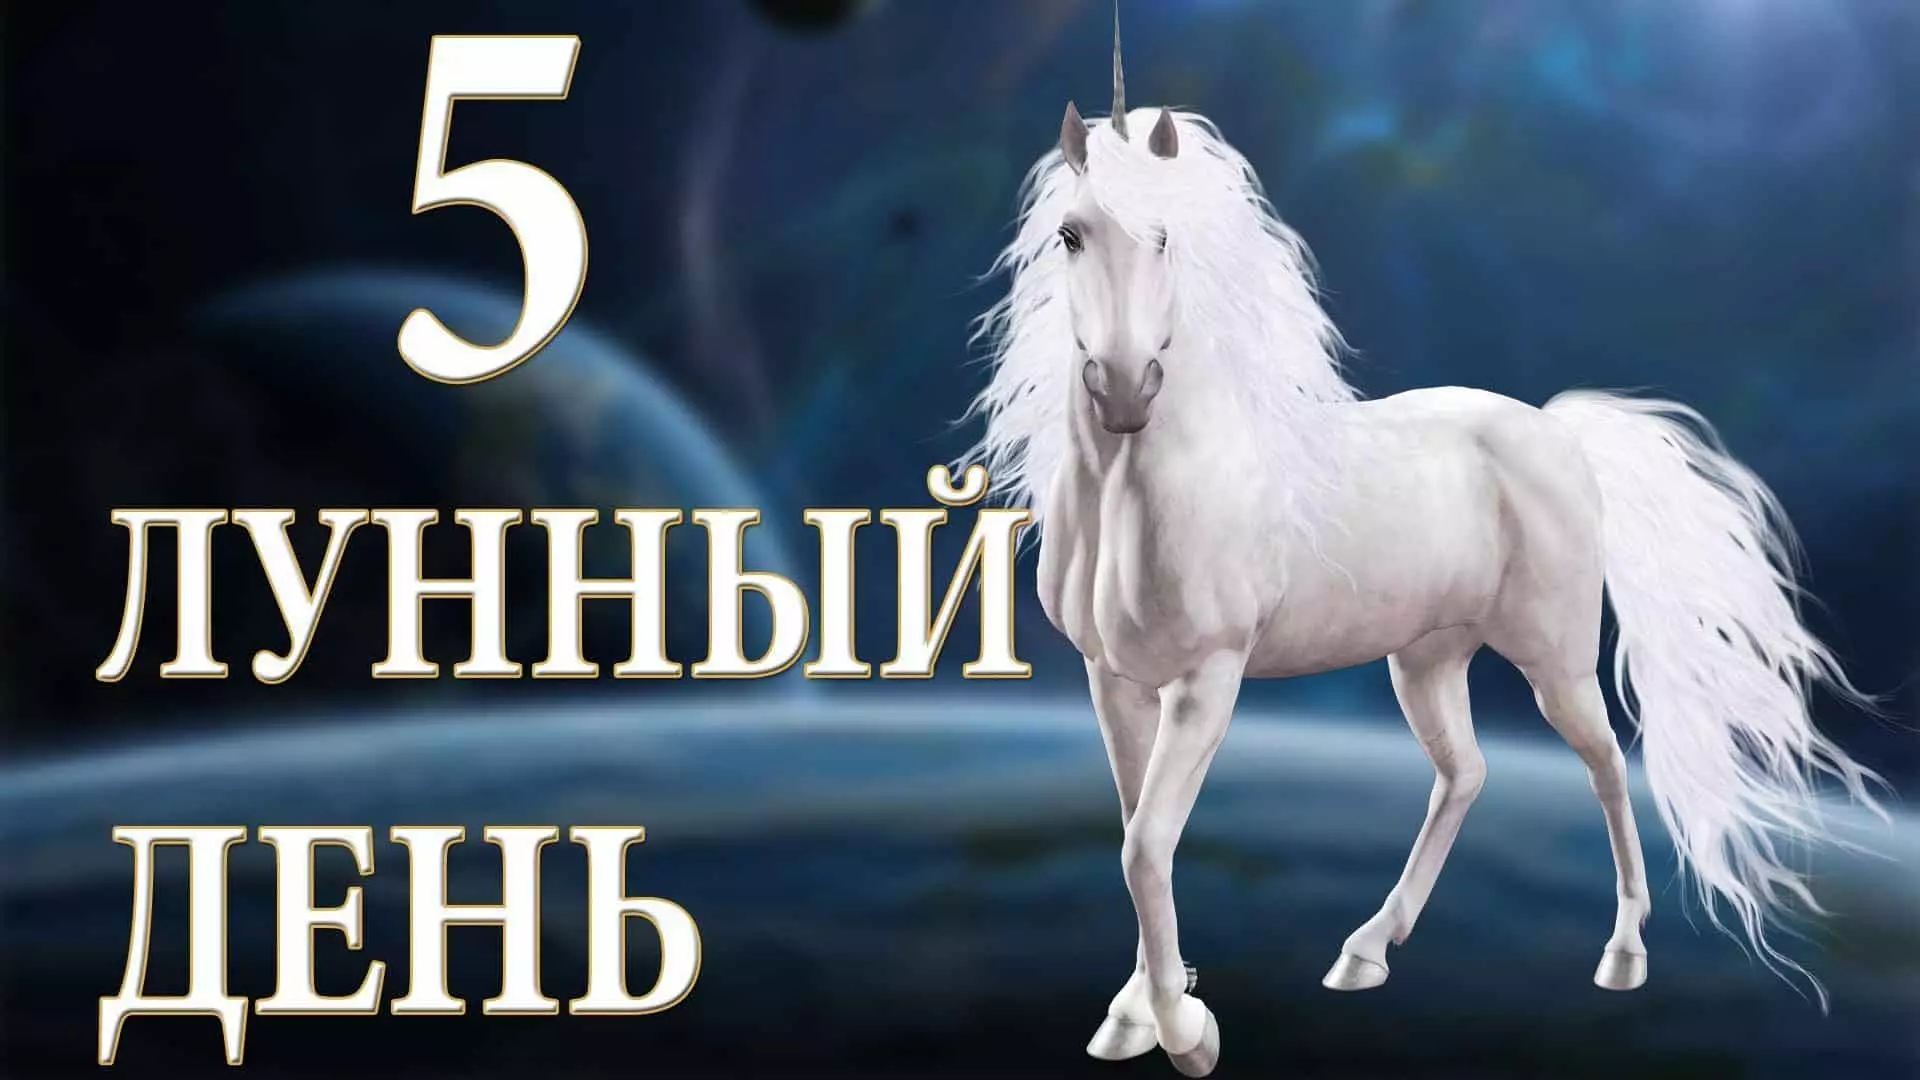 5 Lunardagur: Unicorn tákn hans